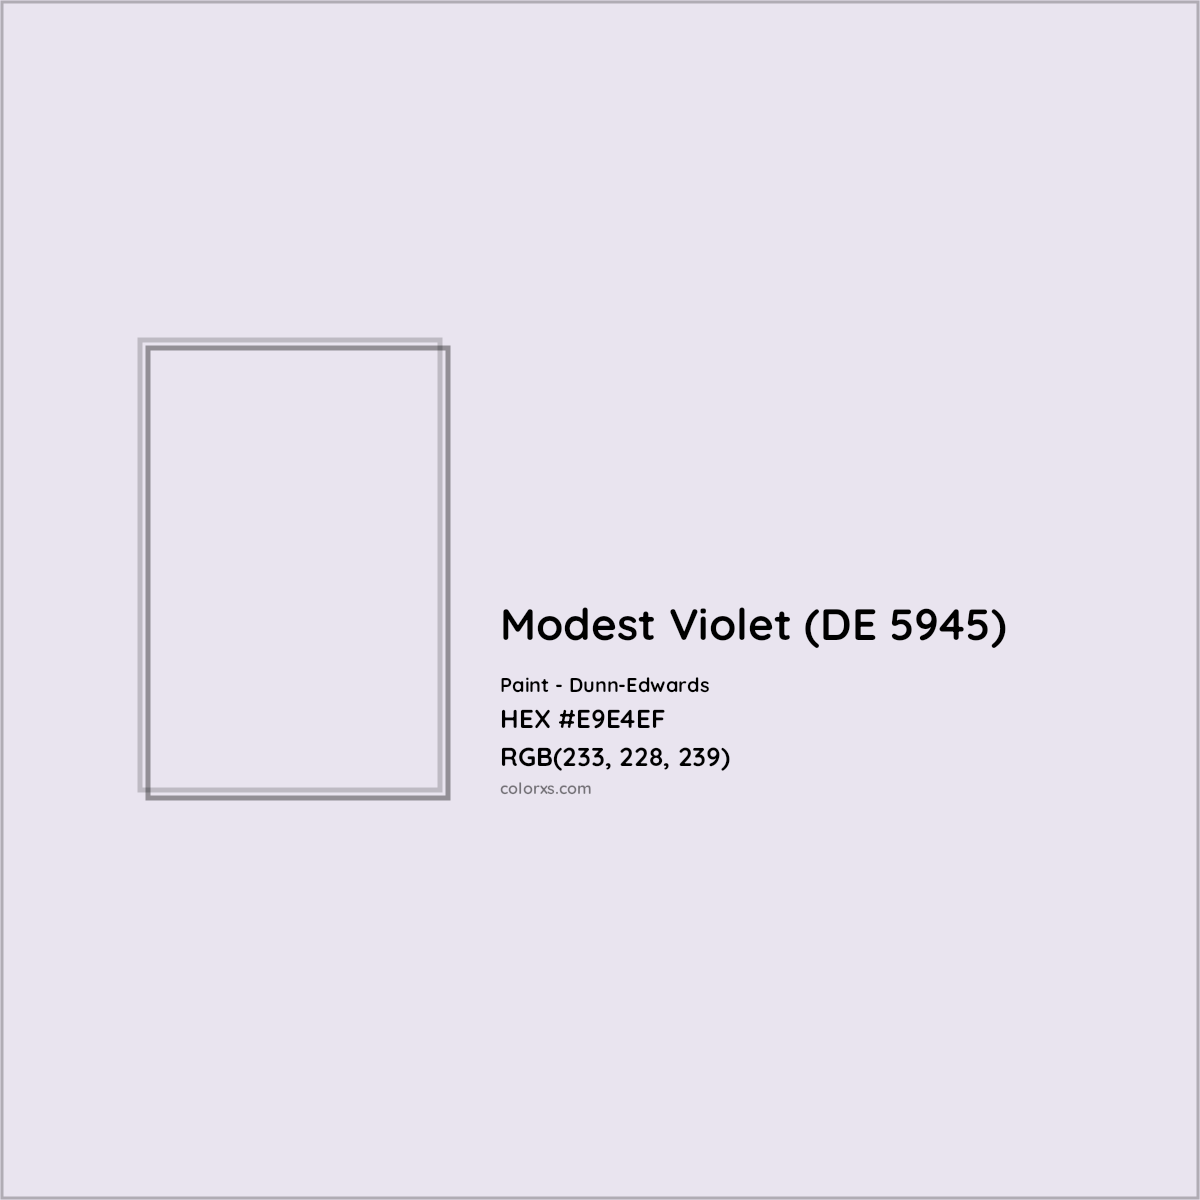 HEX #E9E4EF Modest Violet (DE 5945) Paint Dunn-Edwards - Color Code